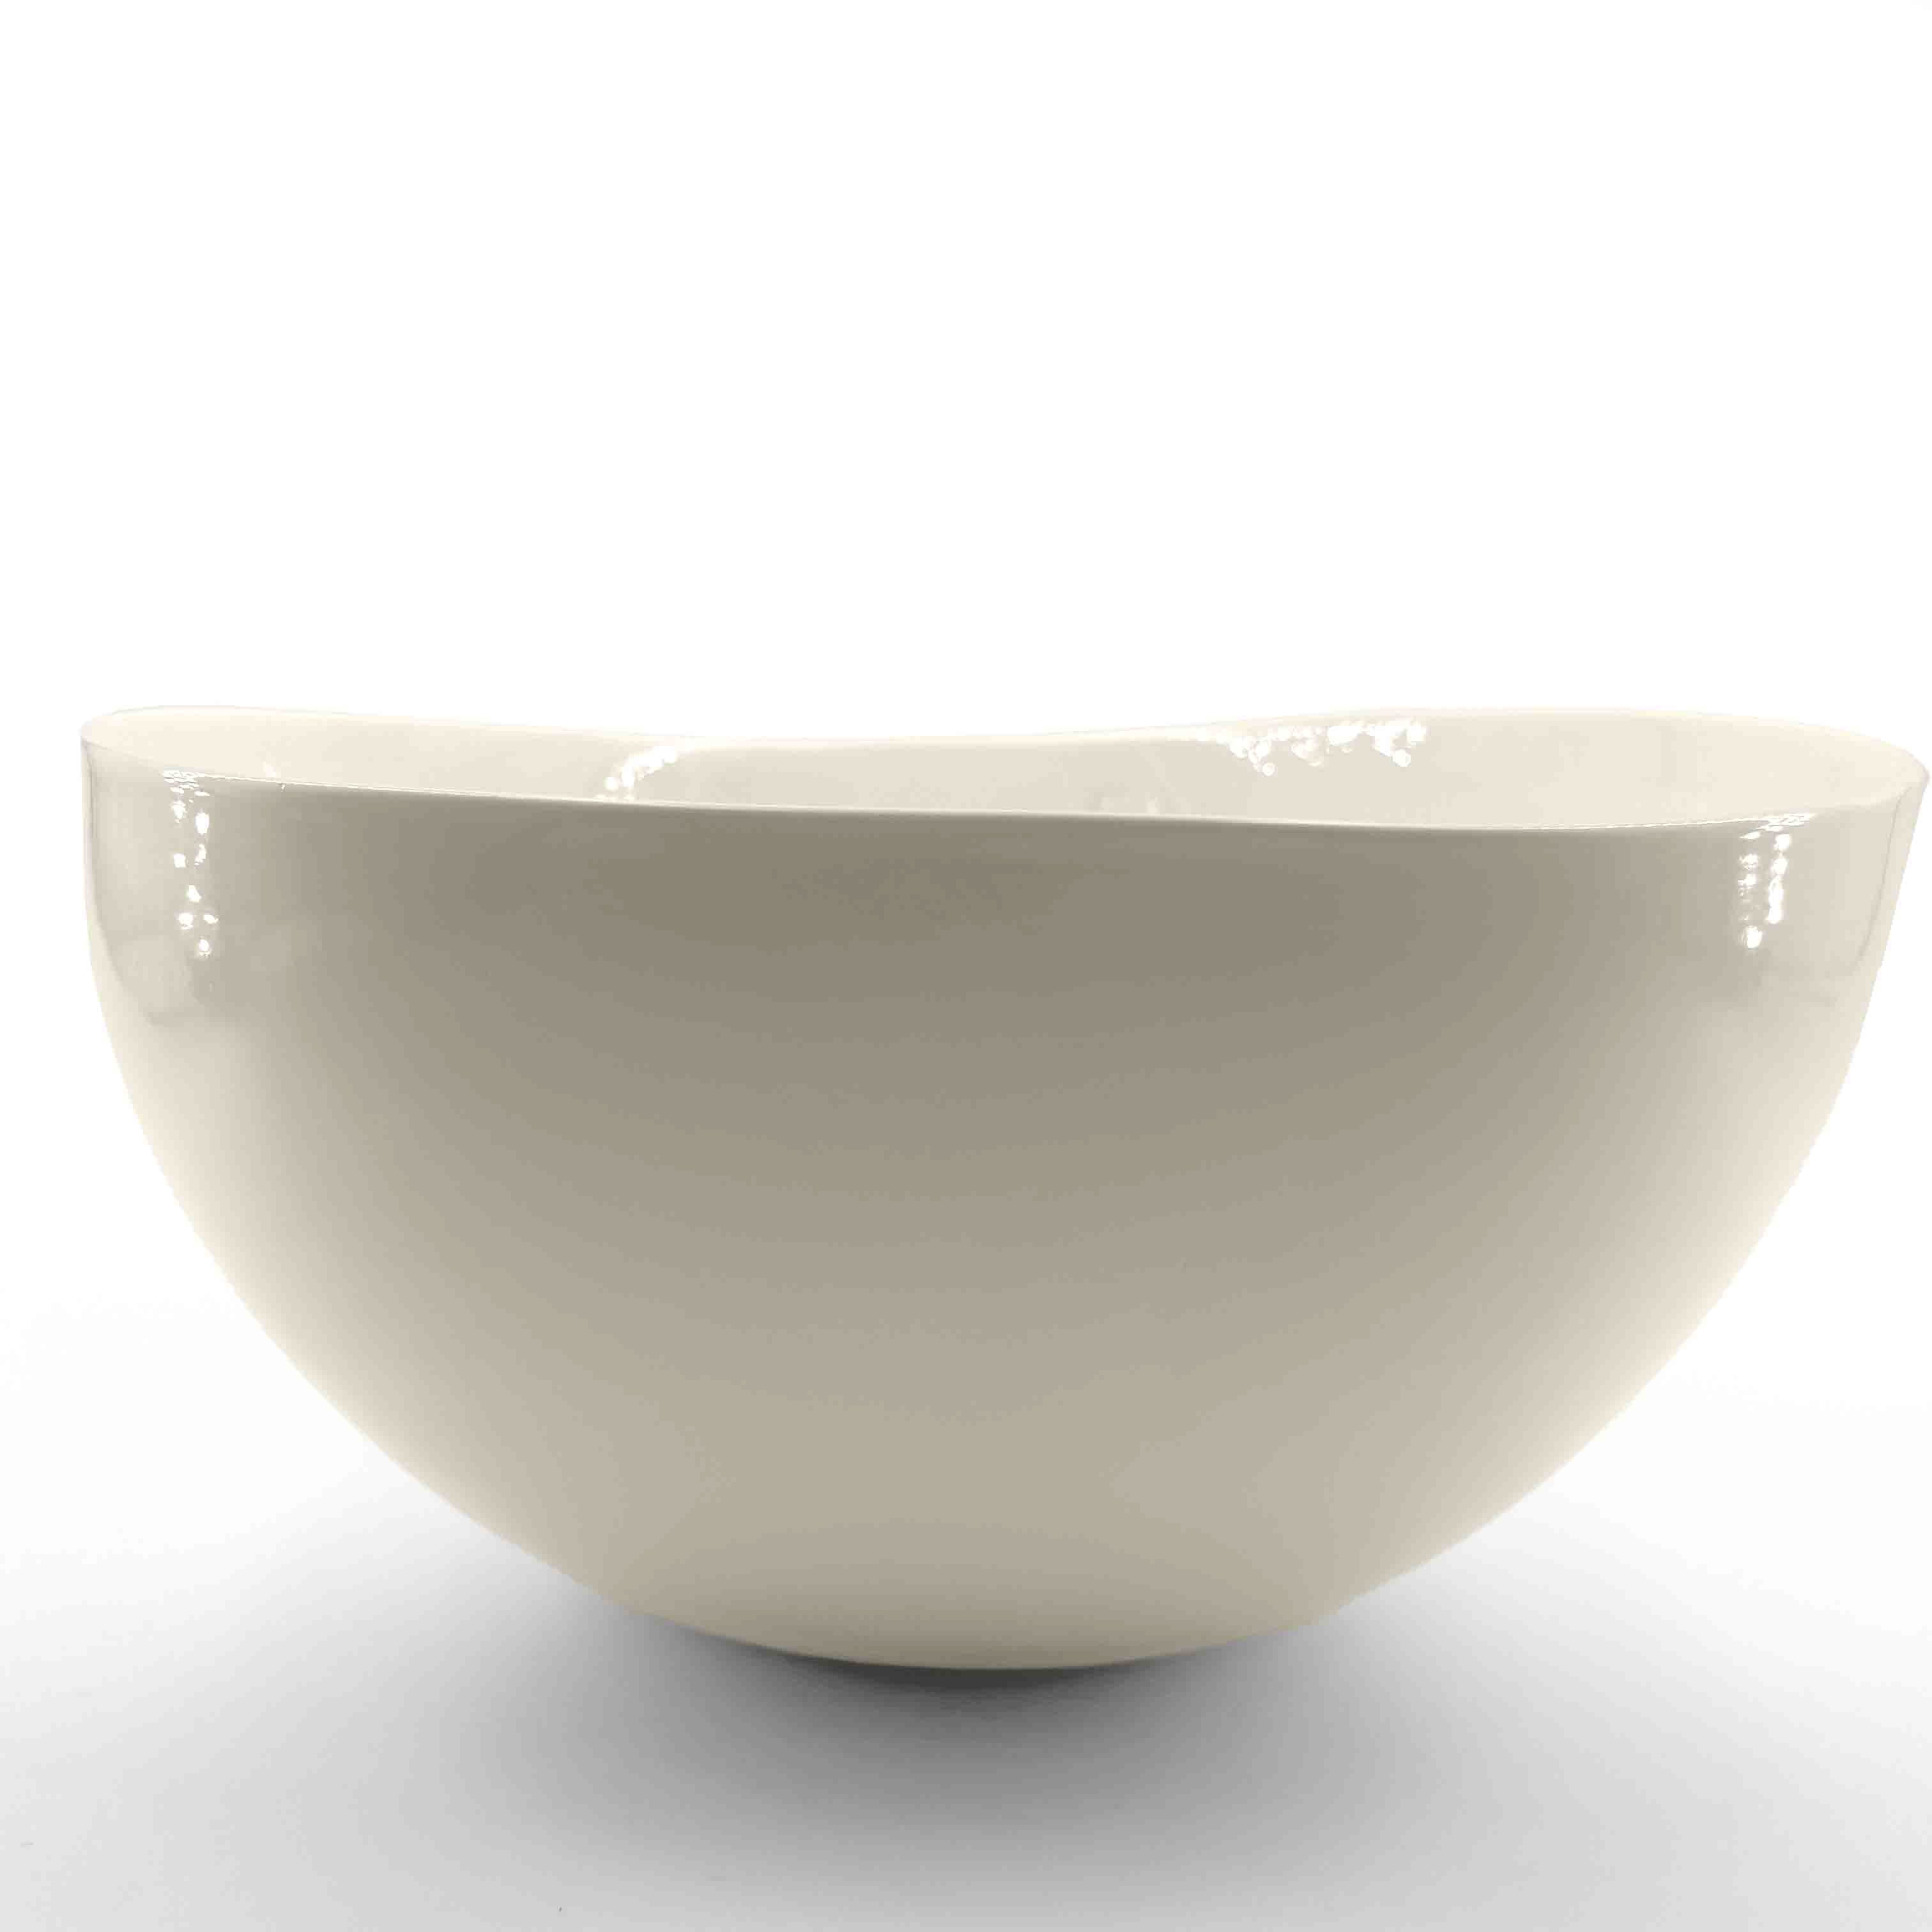 Saladier design en porcelaine blanche - Vaisselle Chic et Tendance